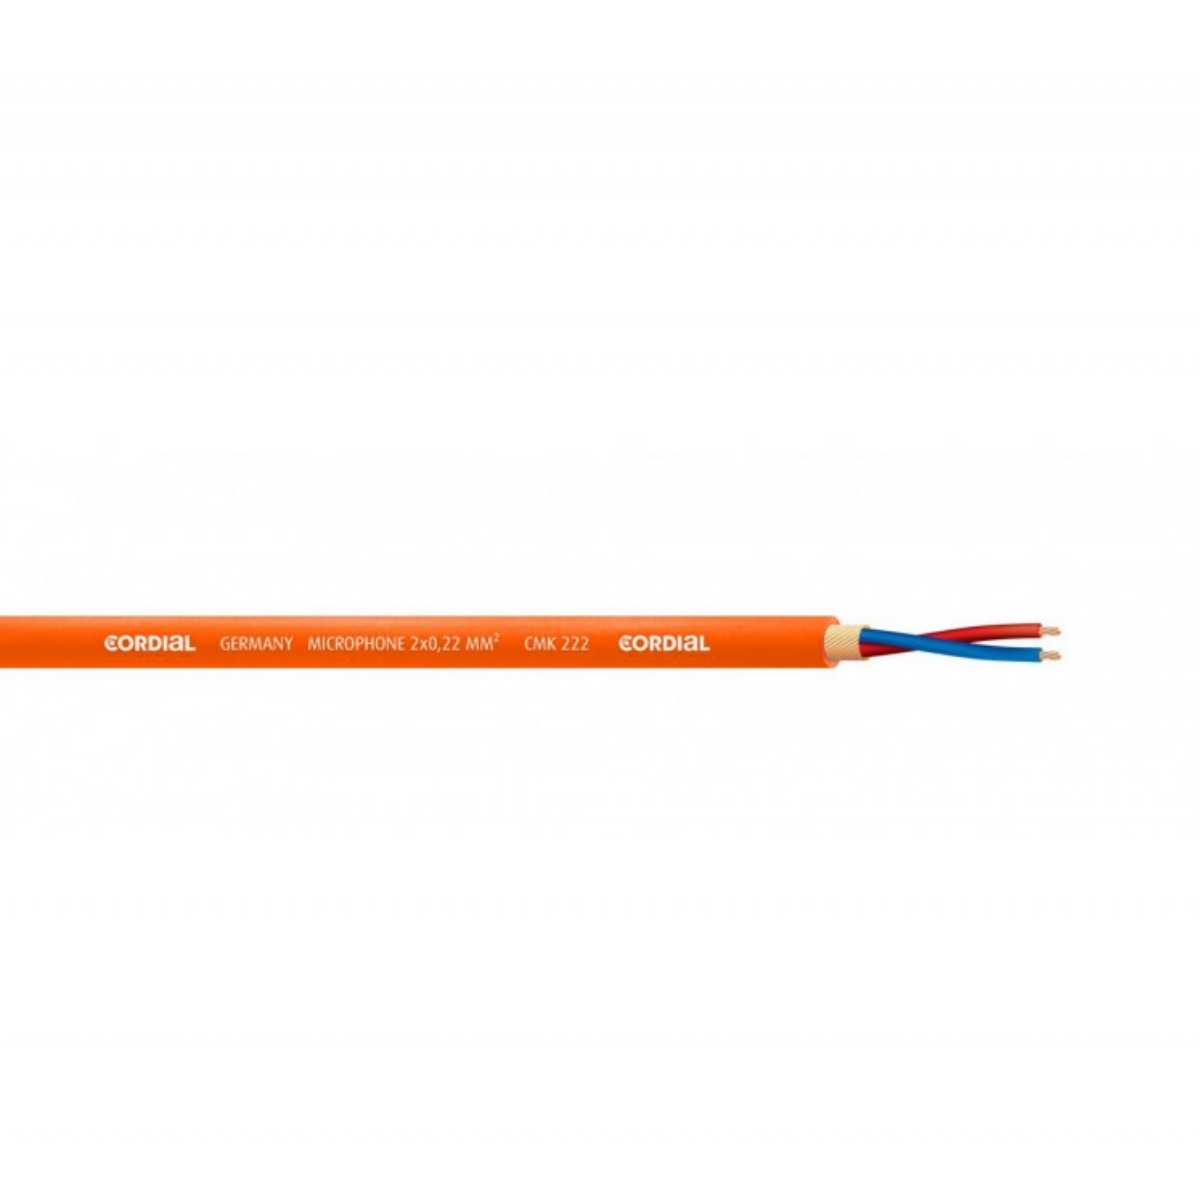 Cordial CMK222 orange Mikrofonkabel/m, 2x 0,22mm², Leiteraufbau 28x 0,10mm, Durchmesser 6,4±0,2mm